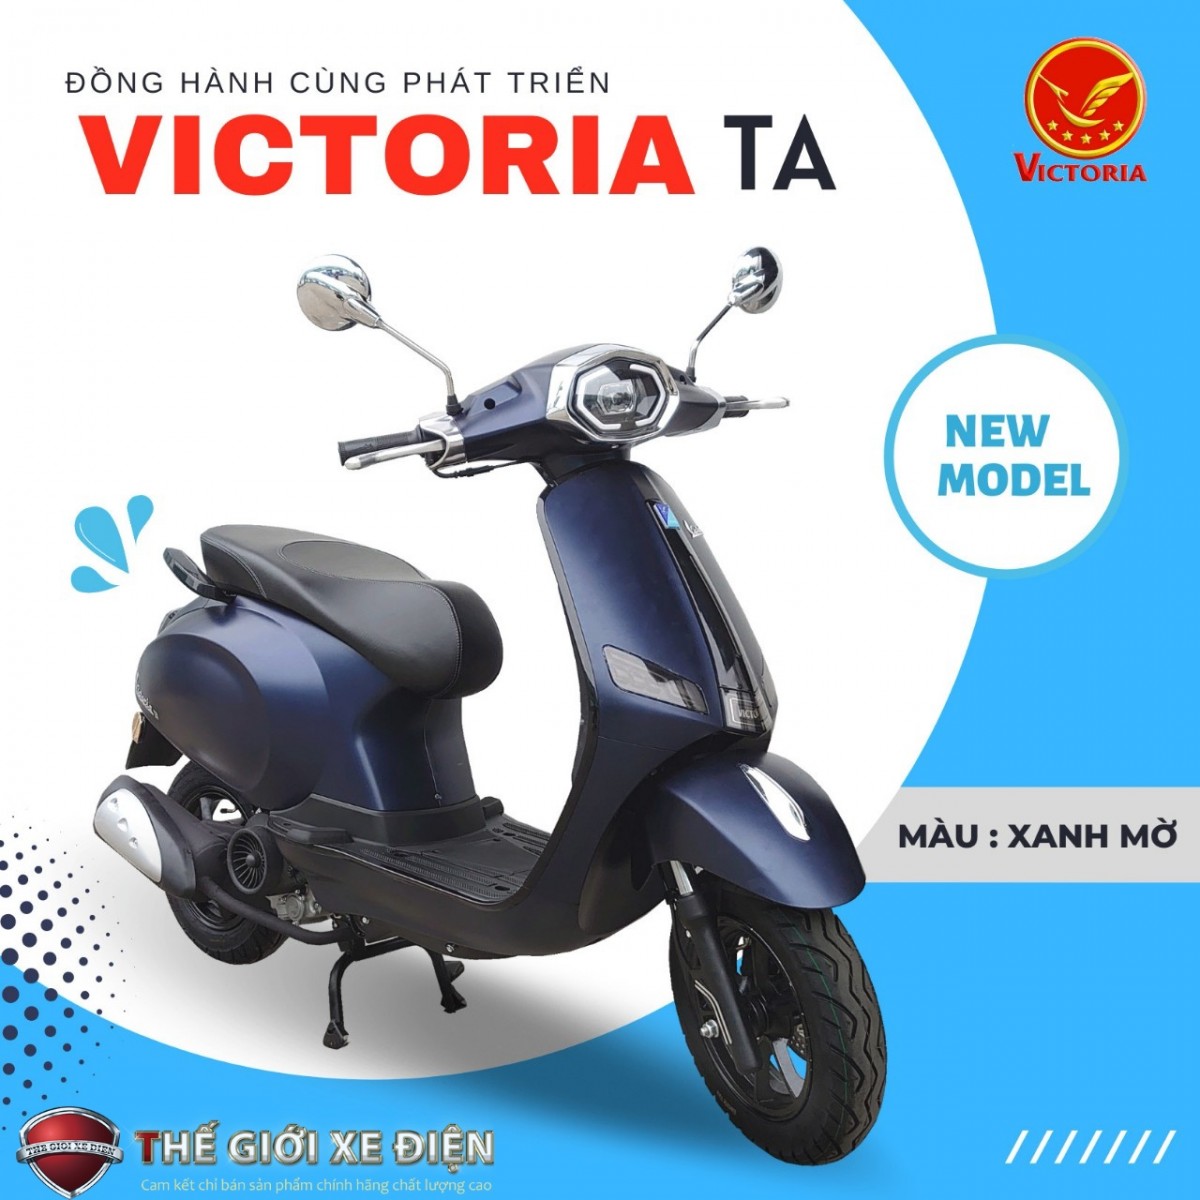 Xe ga 50cc Victoria TA Việt Nhật – Dòng xe liên doanh chất lượng cao